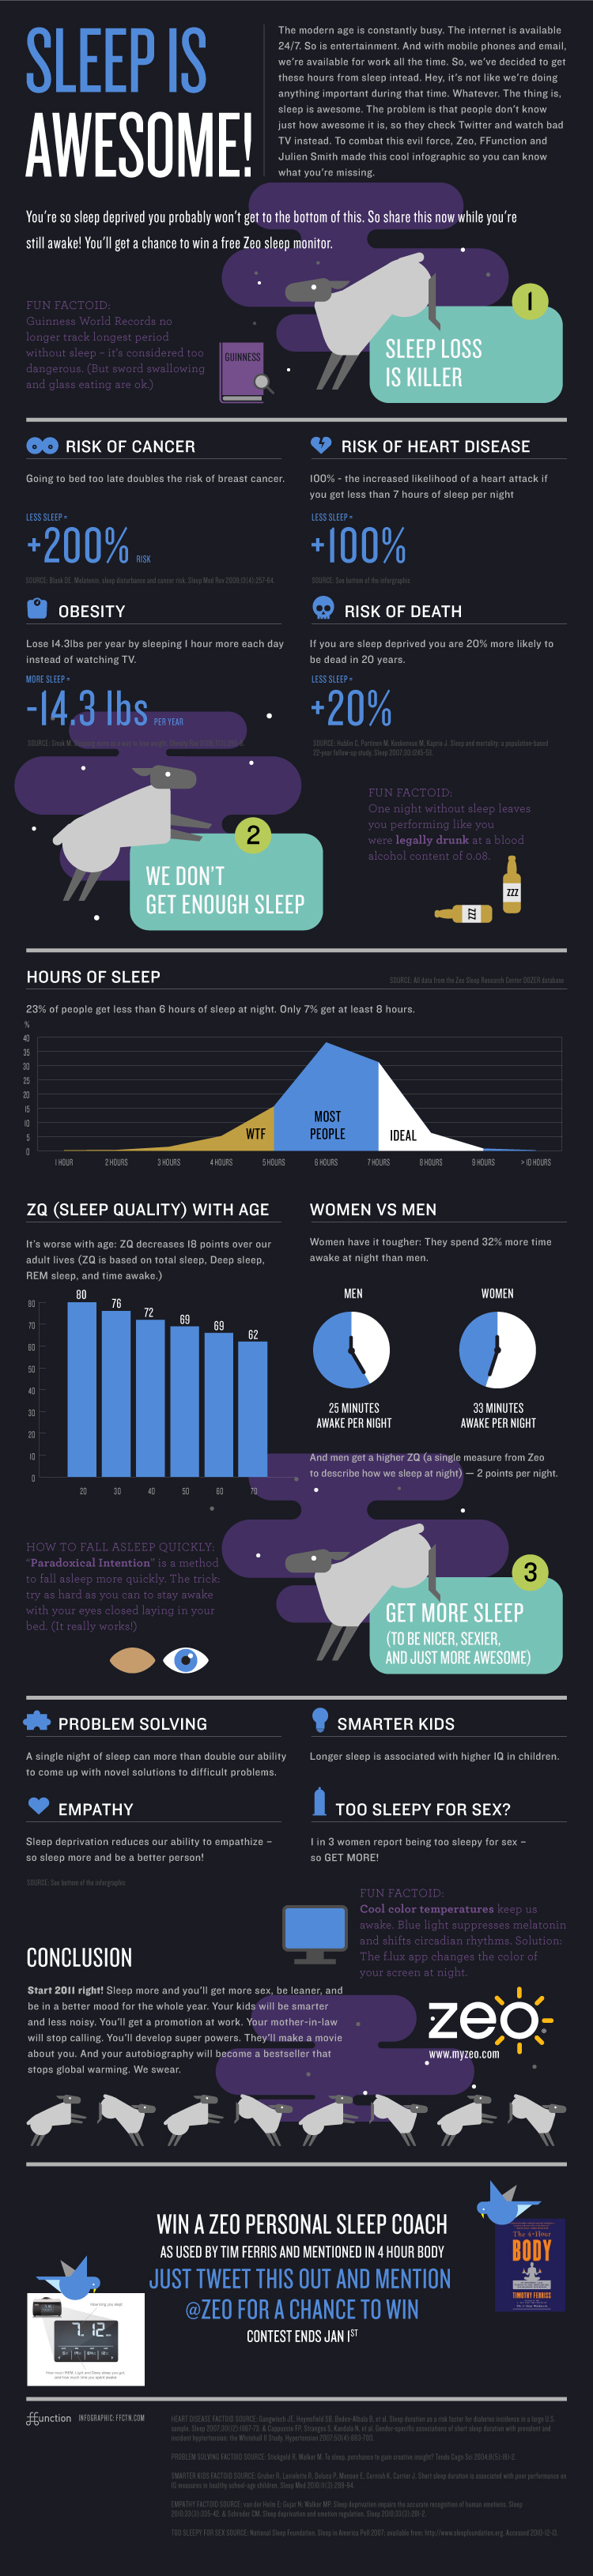 zeo-sleep-infographic